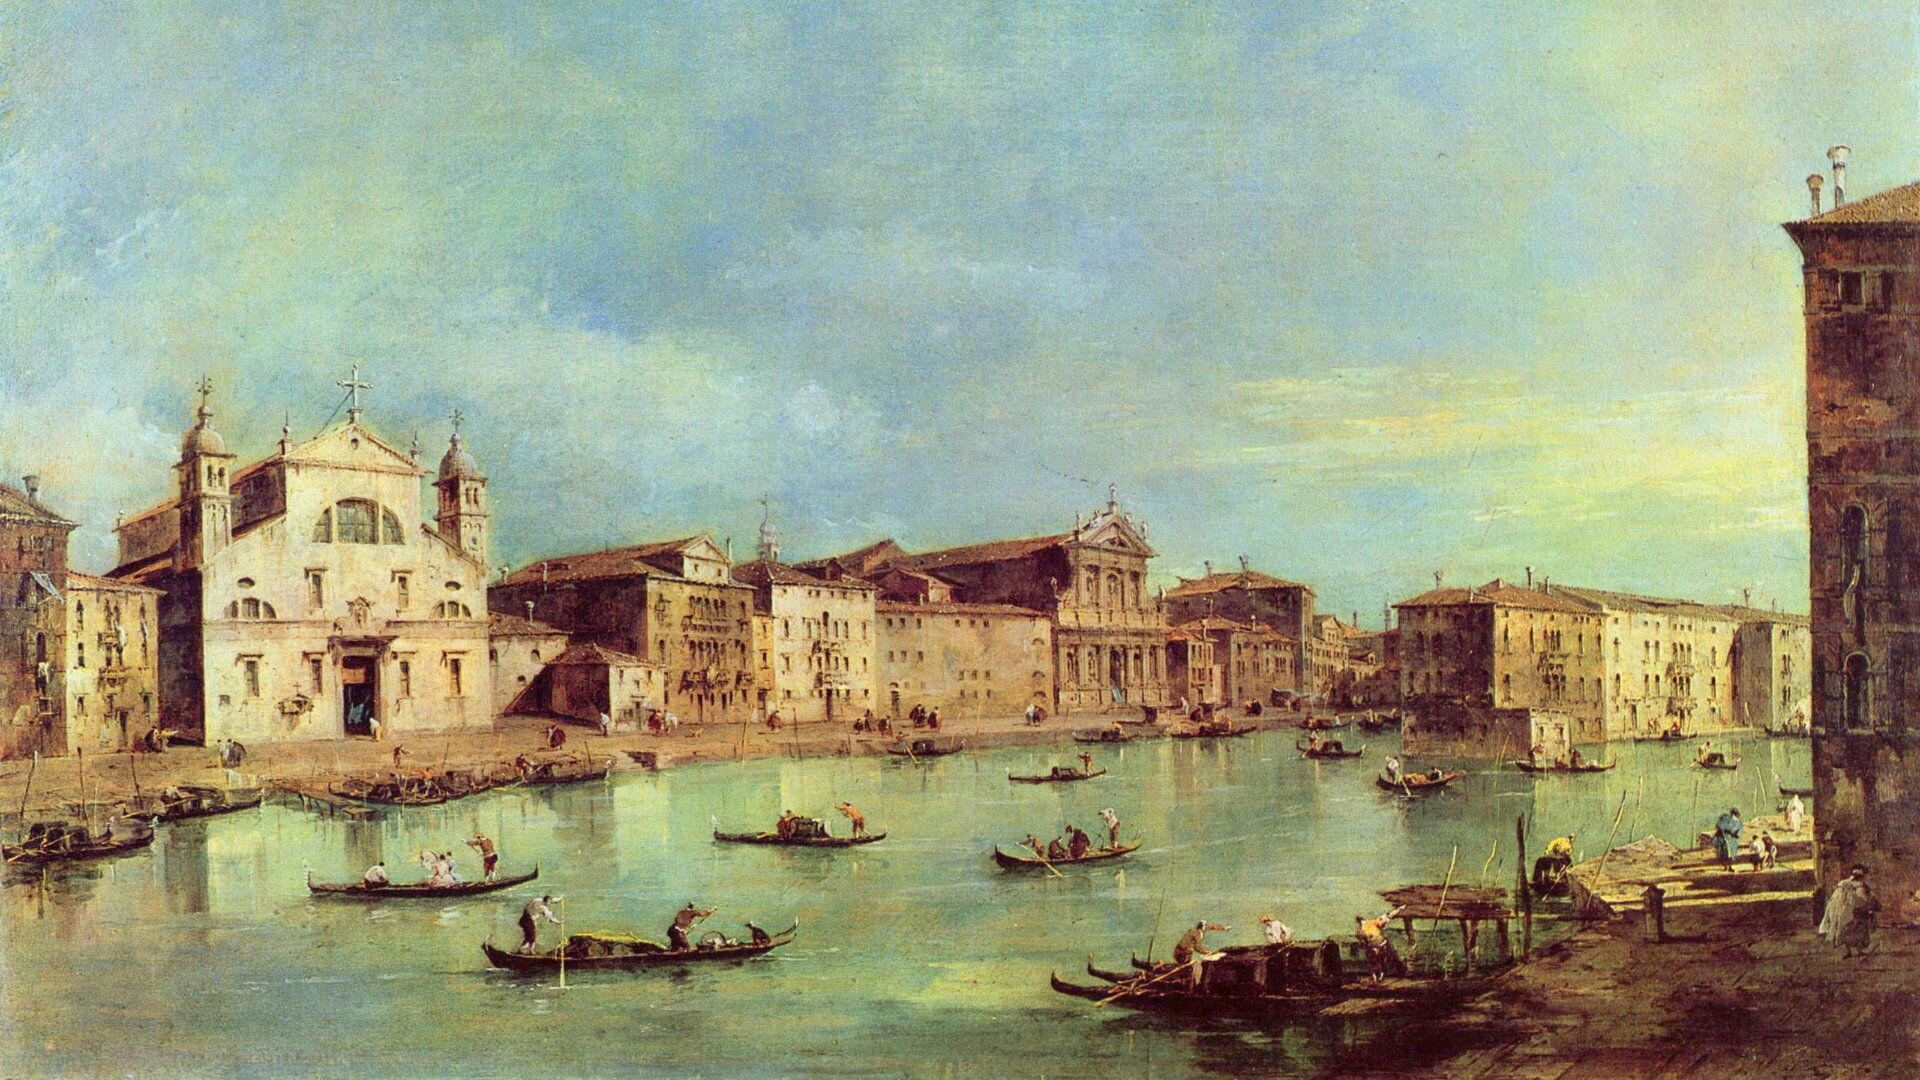 Obraz przedstawia zabudowę miejską nad kanałem, po którym pływają łódki. Jest podpisany: „Francesco Guardi »Canale Grande«”.